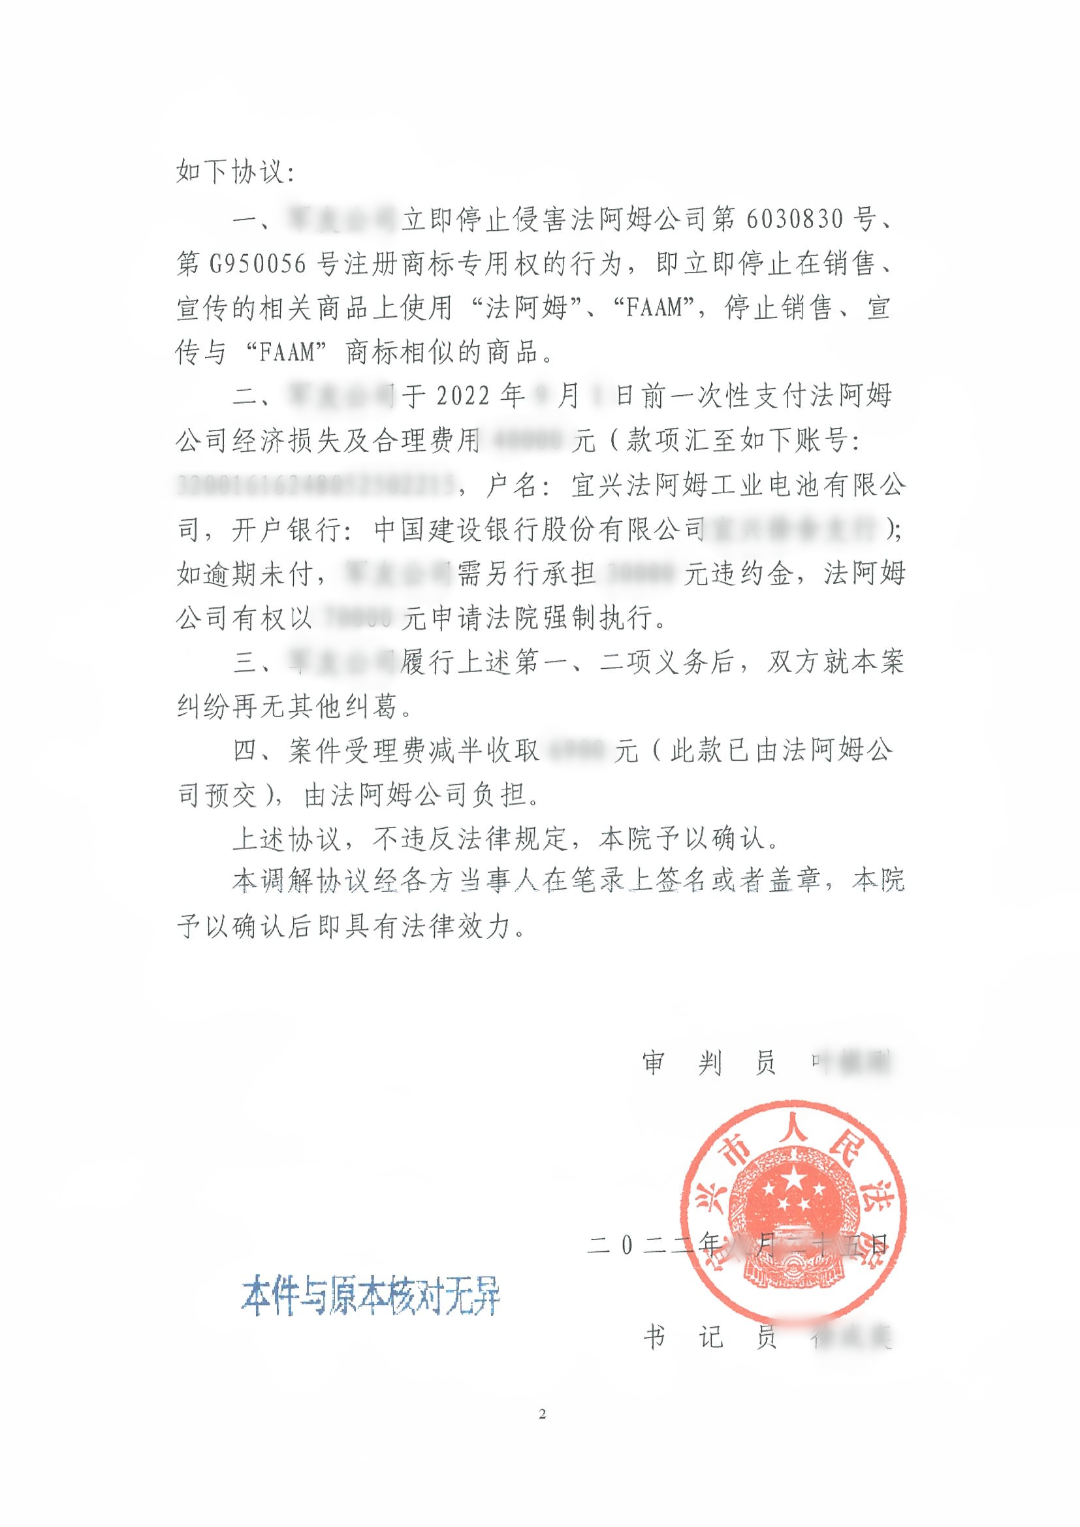 法阿姆诉北京军友 商标侵权一审调解书_01.png